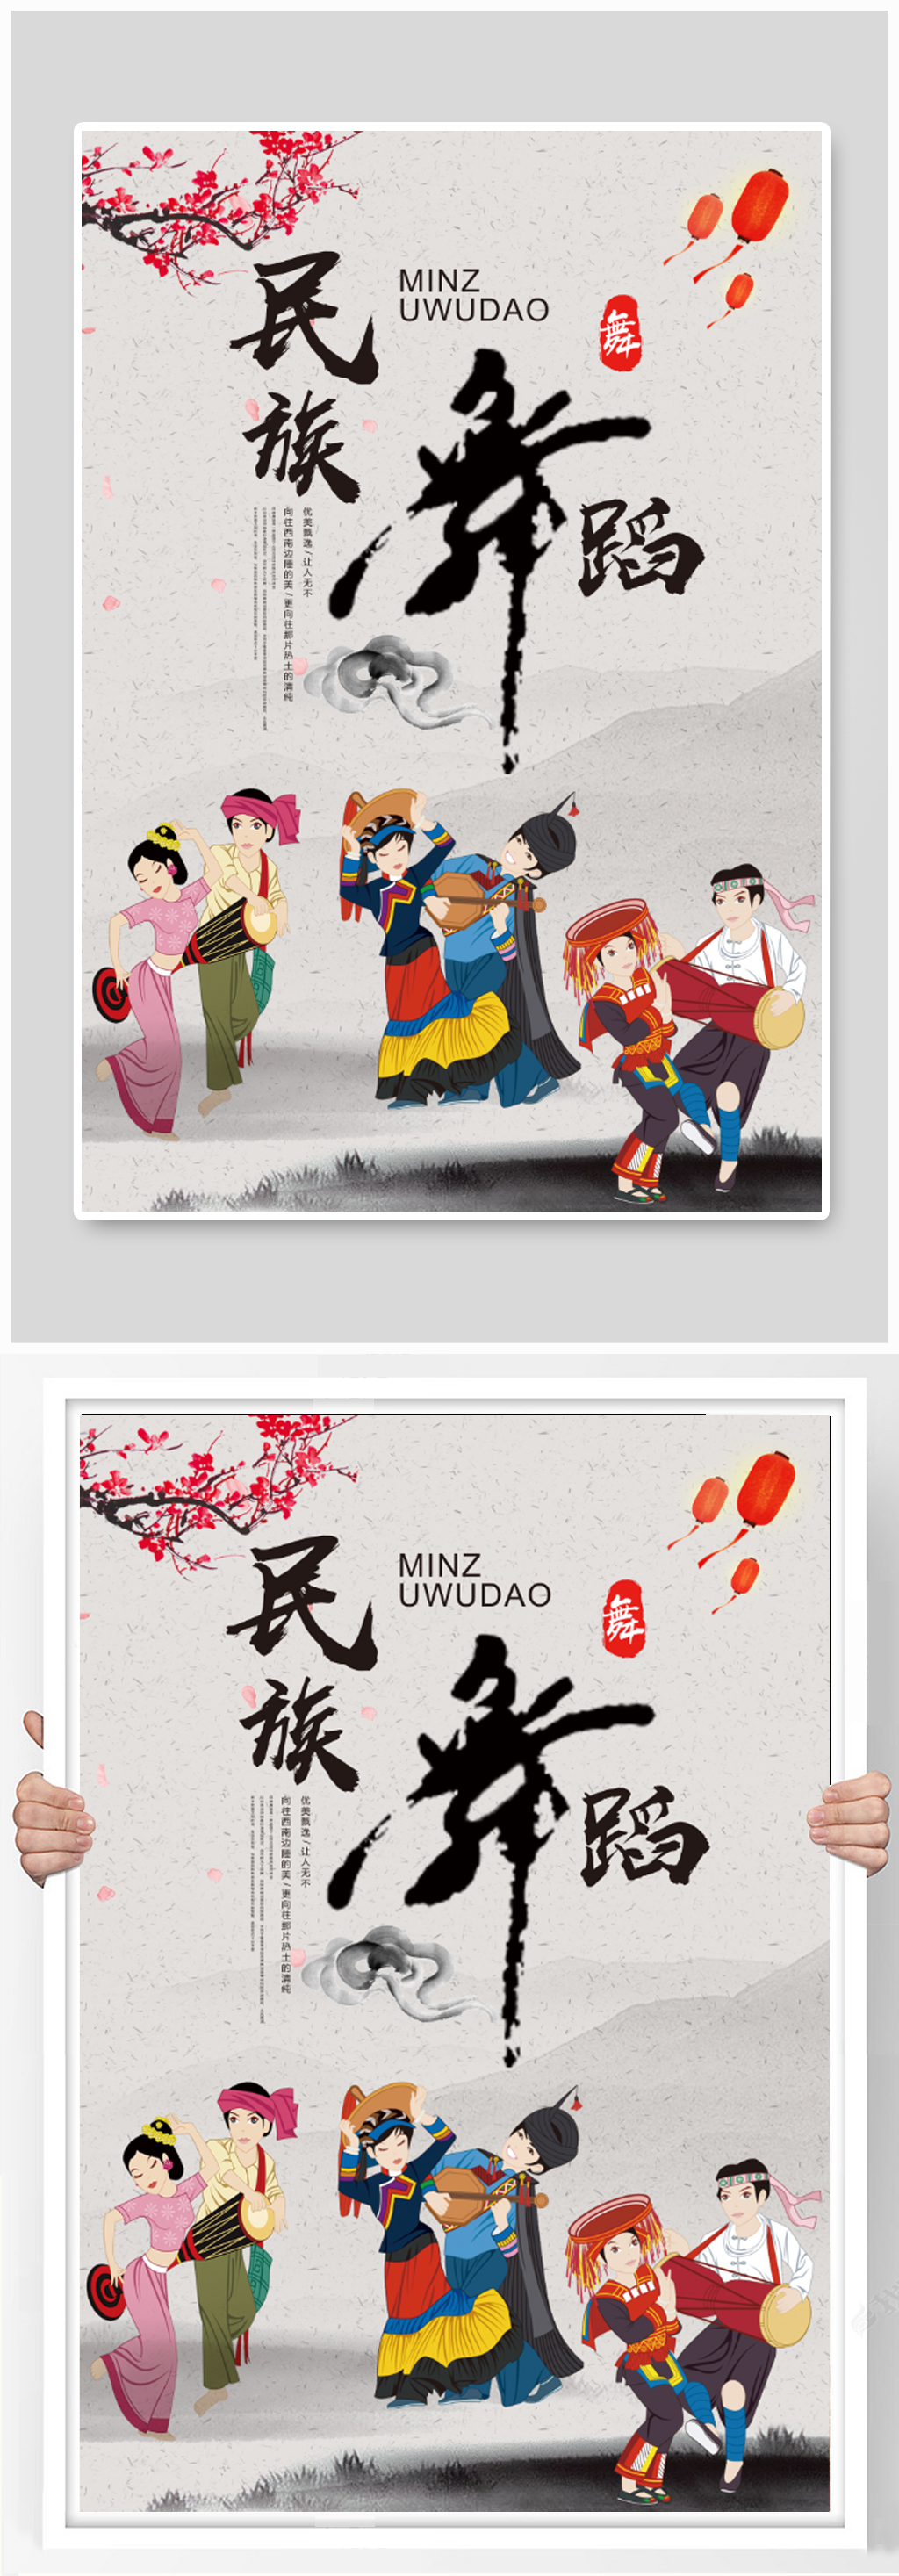 中国传统舞蹈文化民族舞海报立即下载传统民族舞舞蹈海报设计立即下载